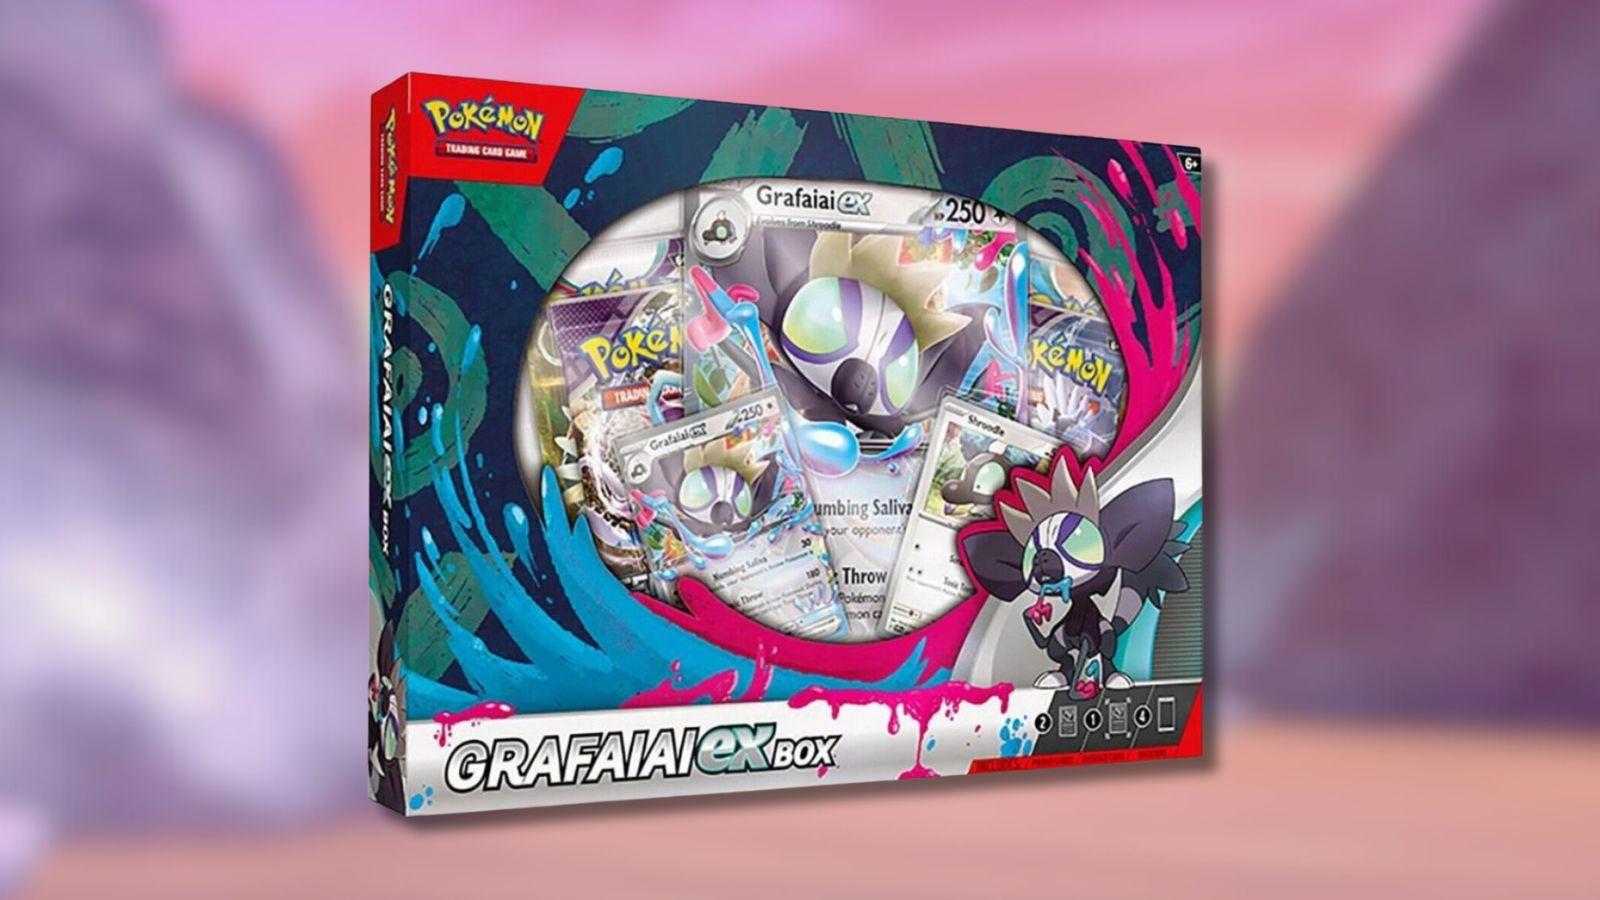 Grafaiai ex Box with Pokemon game background.